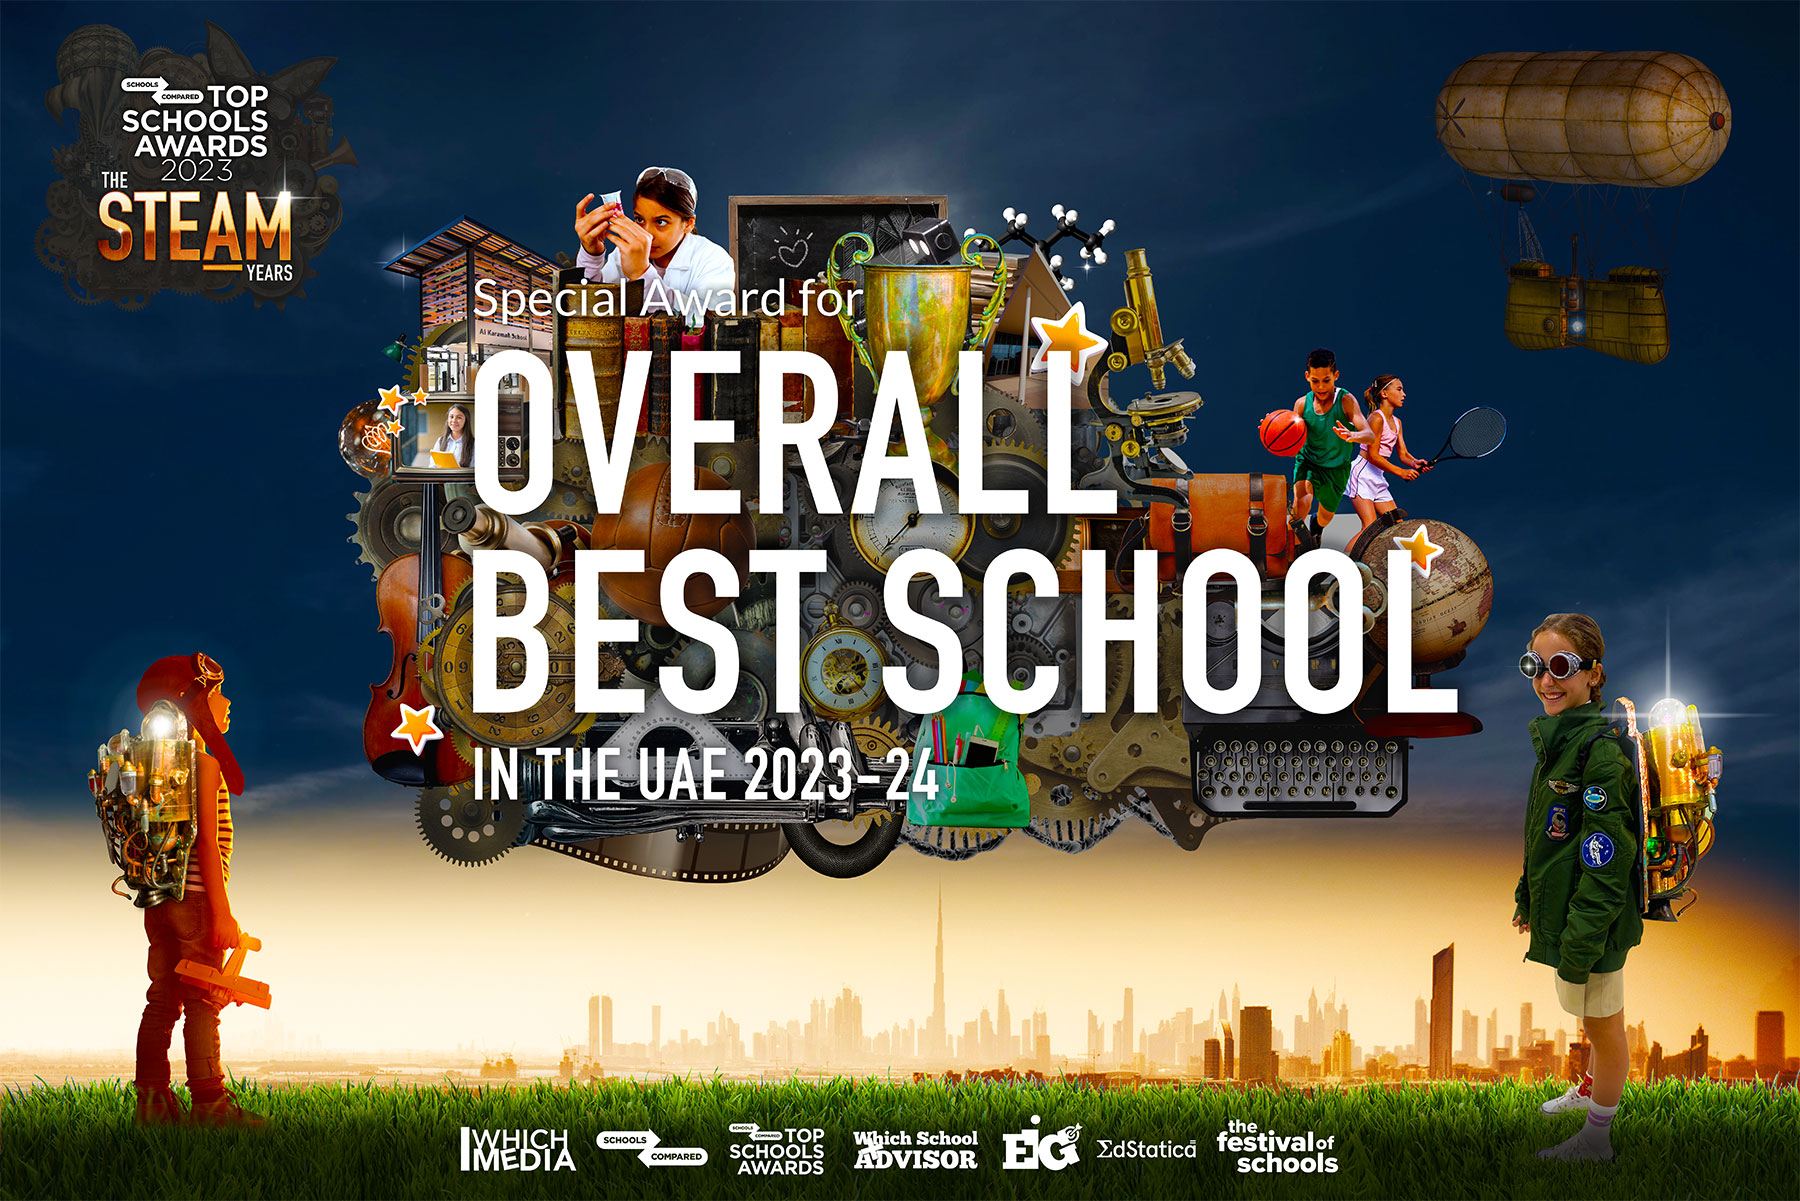 Best School in the UAE 2023 - 2024. Top Schools Awards 2023 - 2024